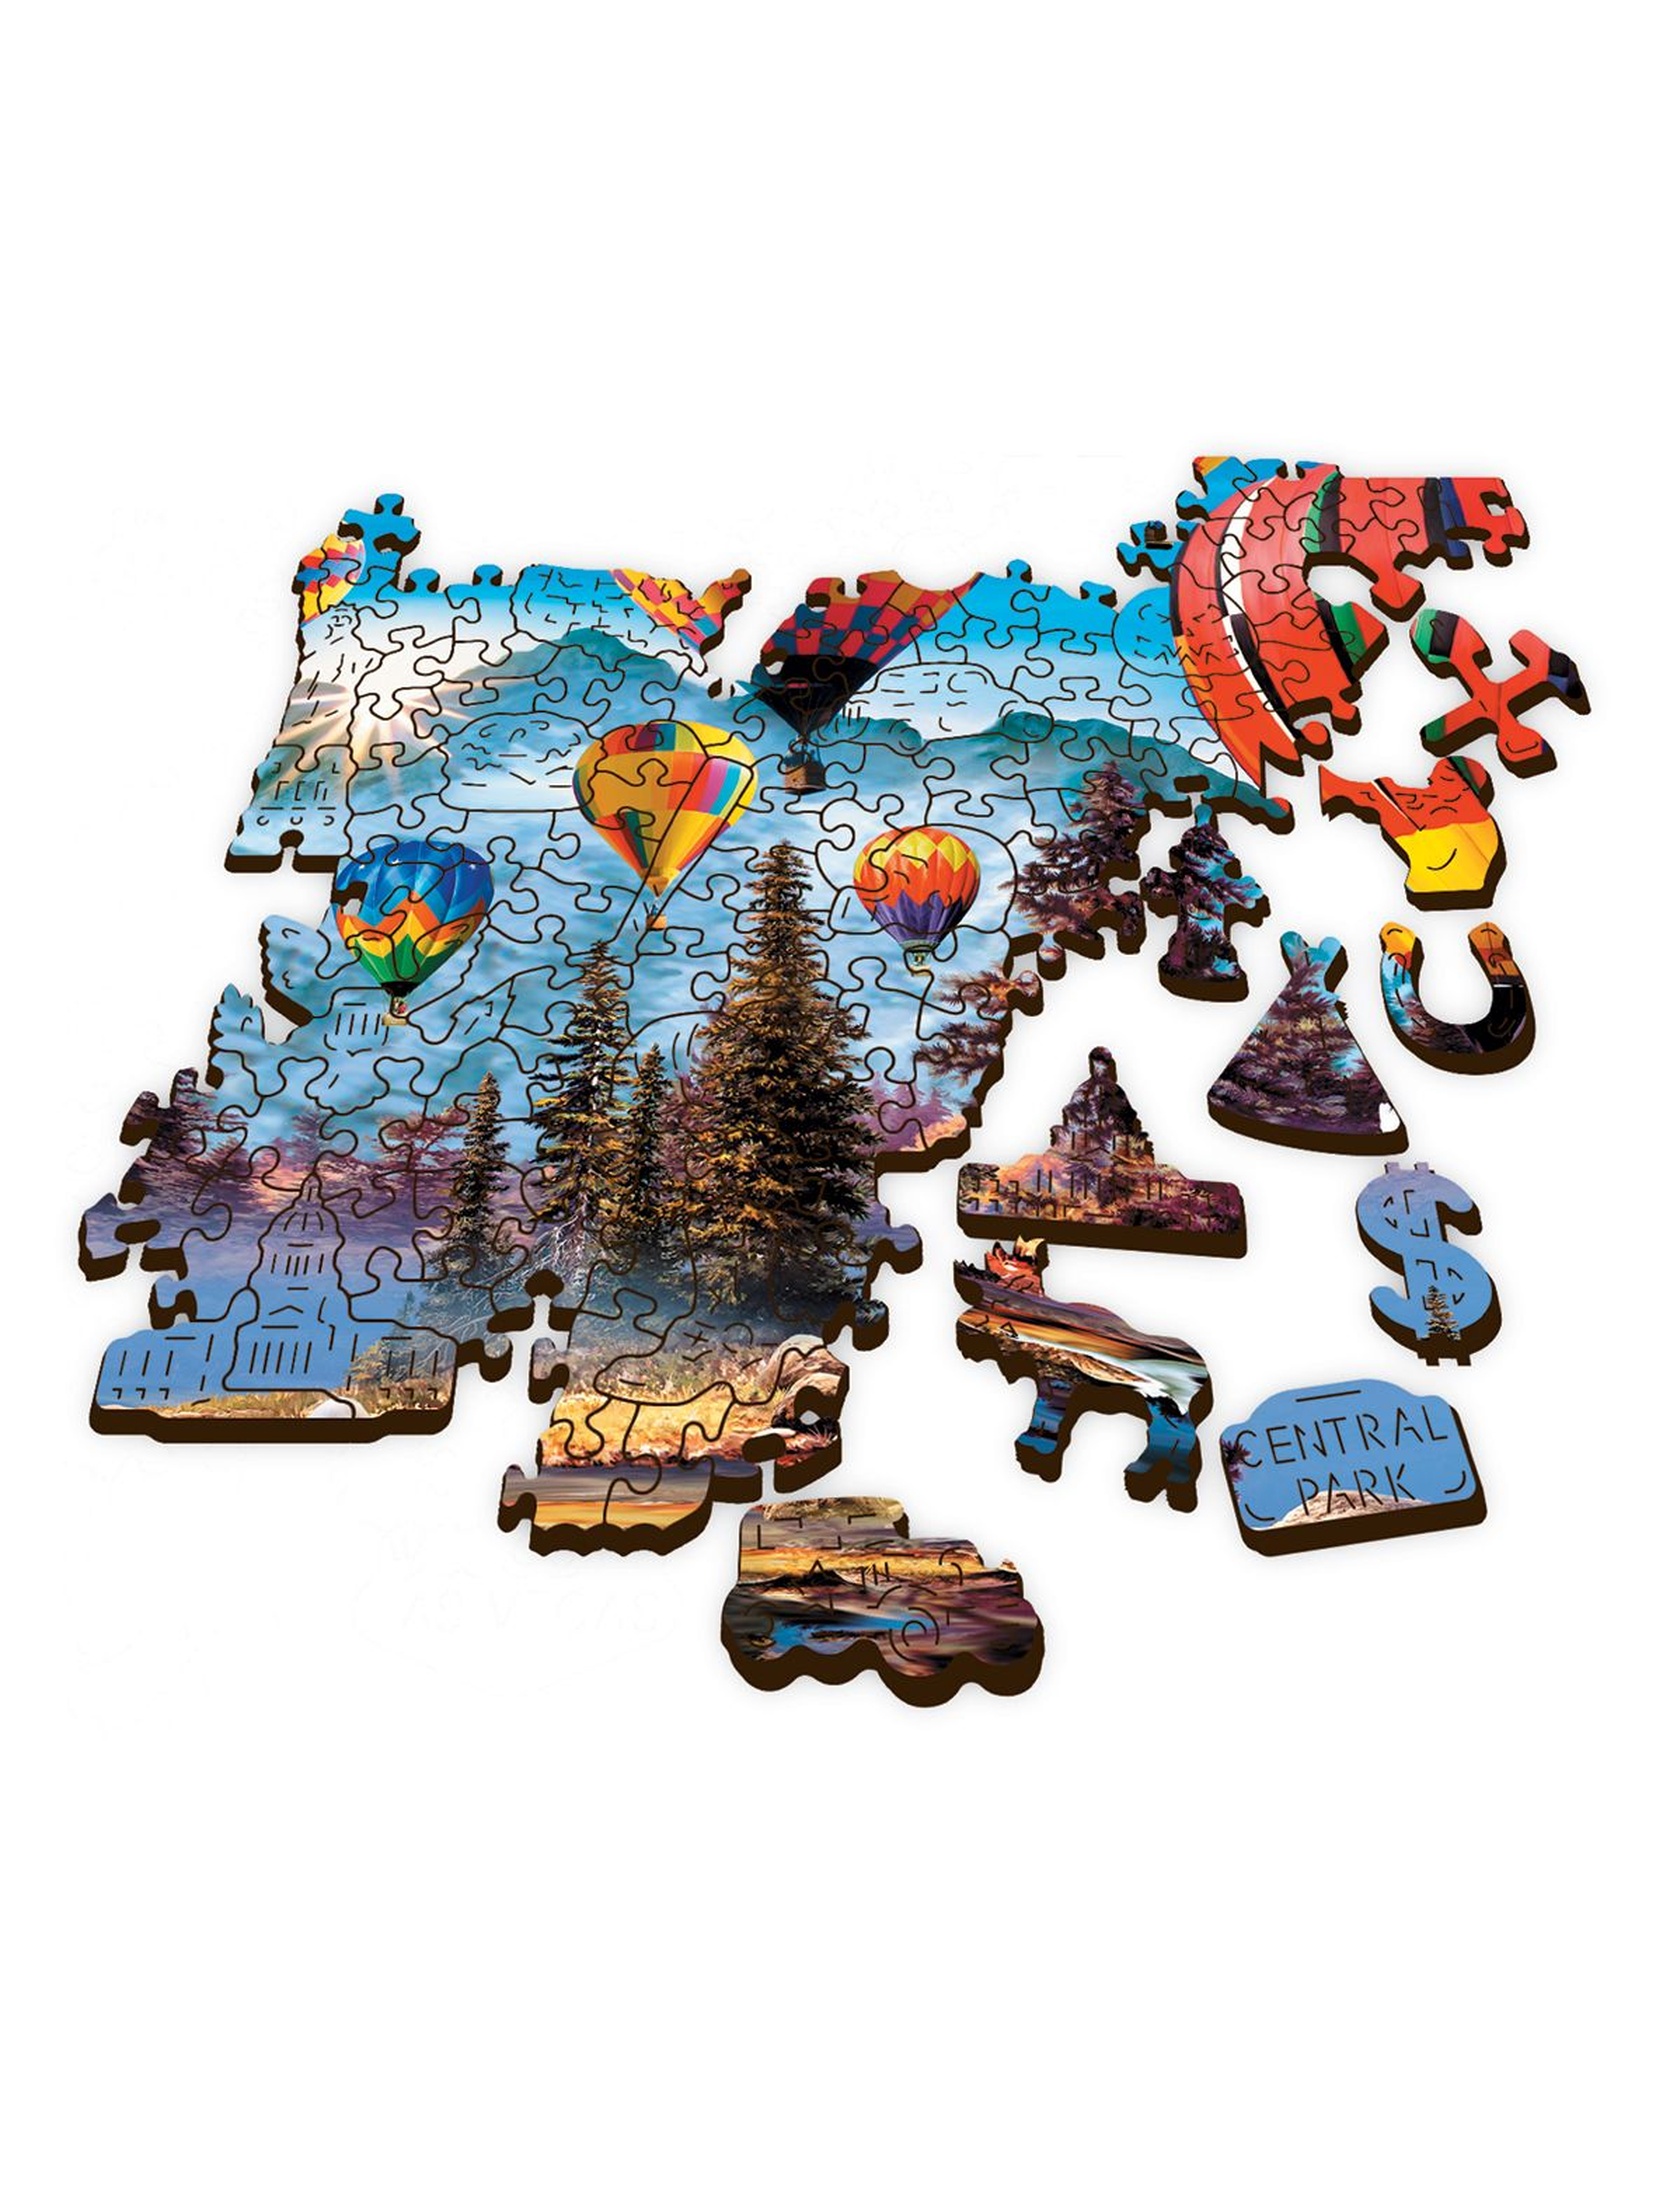 Puzzle Drewniane Trefl - Kolorowe balony -  1000 el